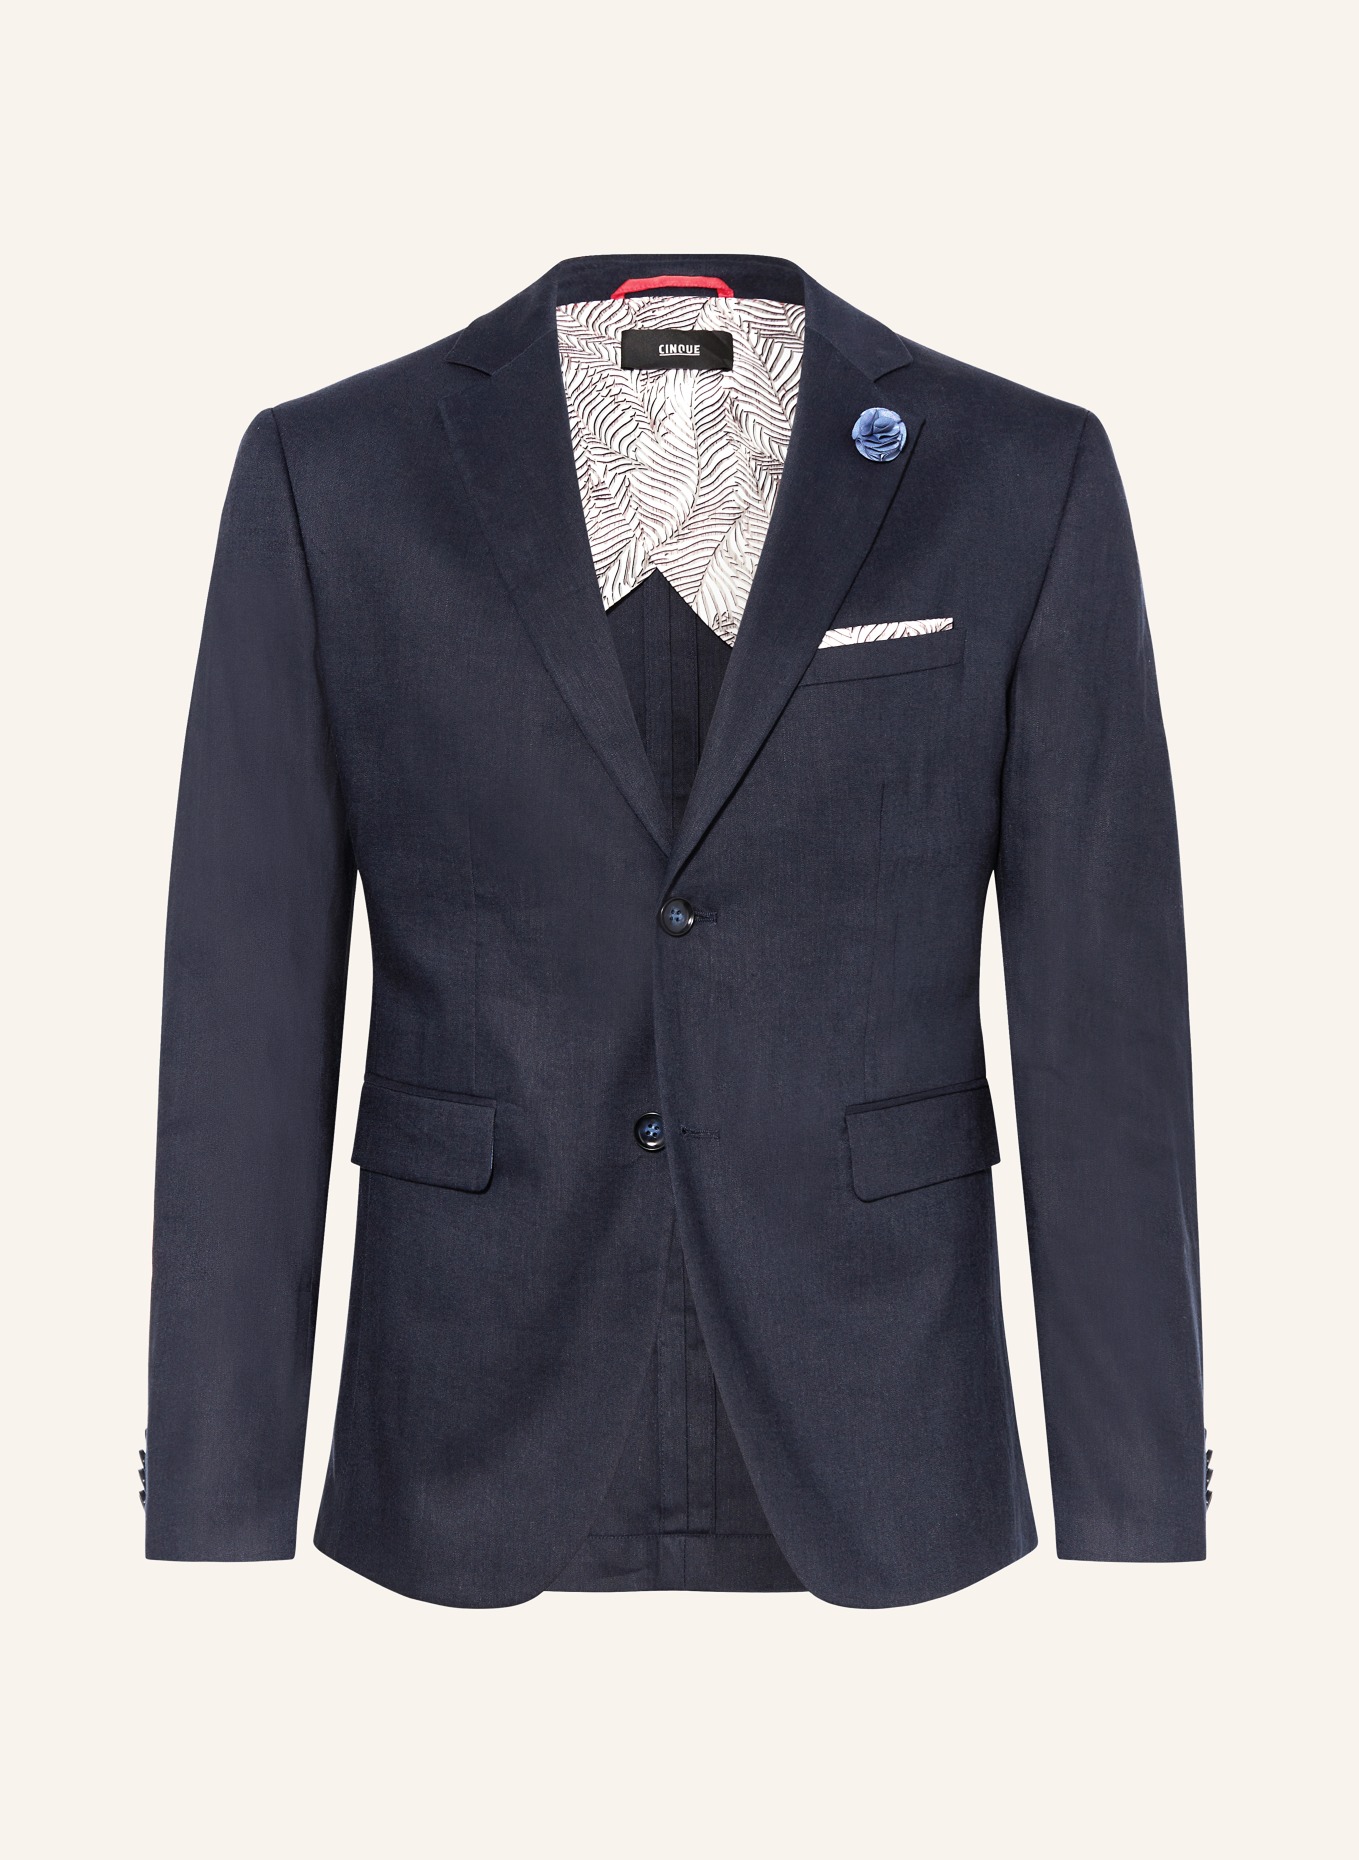 CINQUE Suit jacket CICAVA extra slim fit with linen, Color: 69 DUNKELBLAU (Image 1)